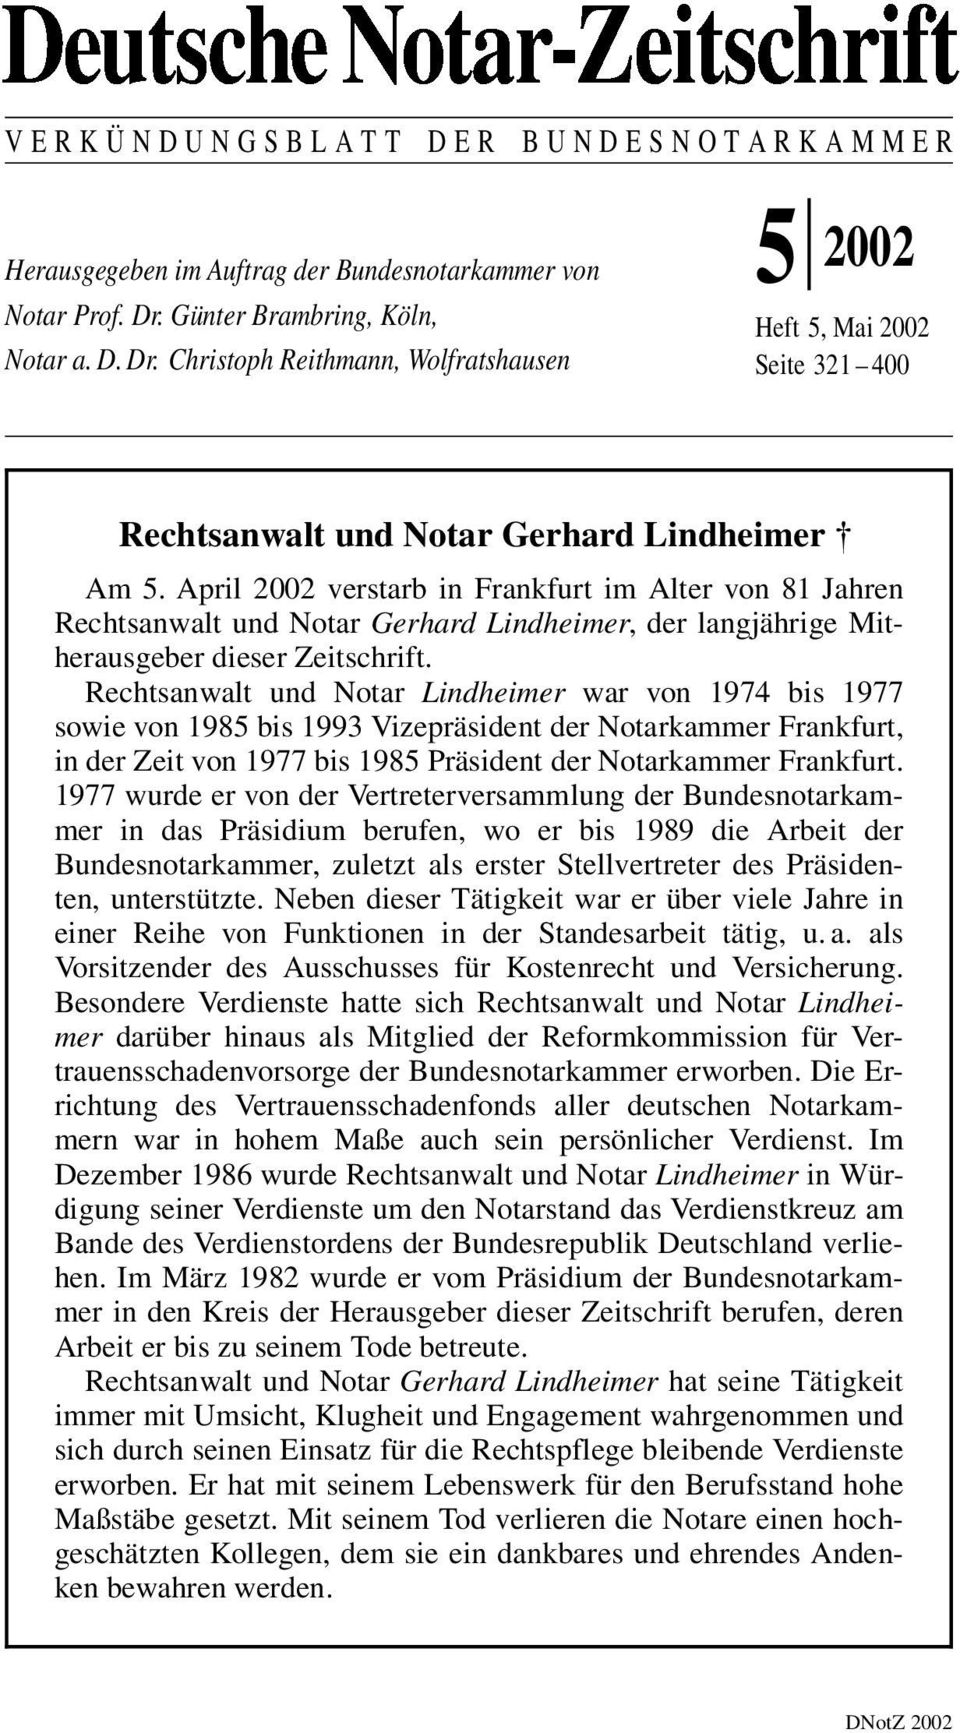 April 2002 verstarb in Frankfurt im Alter von 81 Jahren Rechtsanwalt und Notar Gerhard Lindheimer, der langjährige Mitherausgeber dieser Zeitschrift.